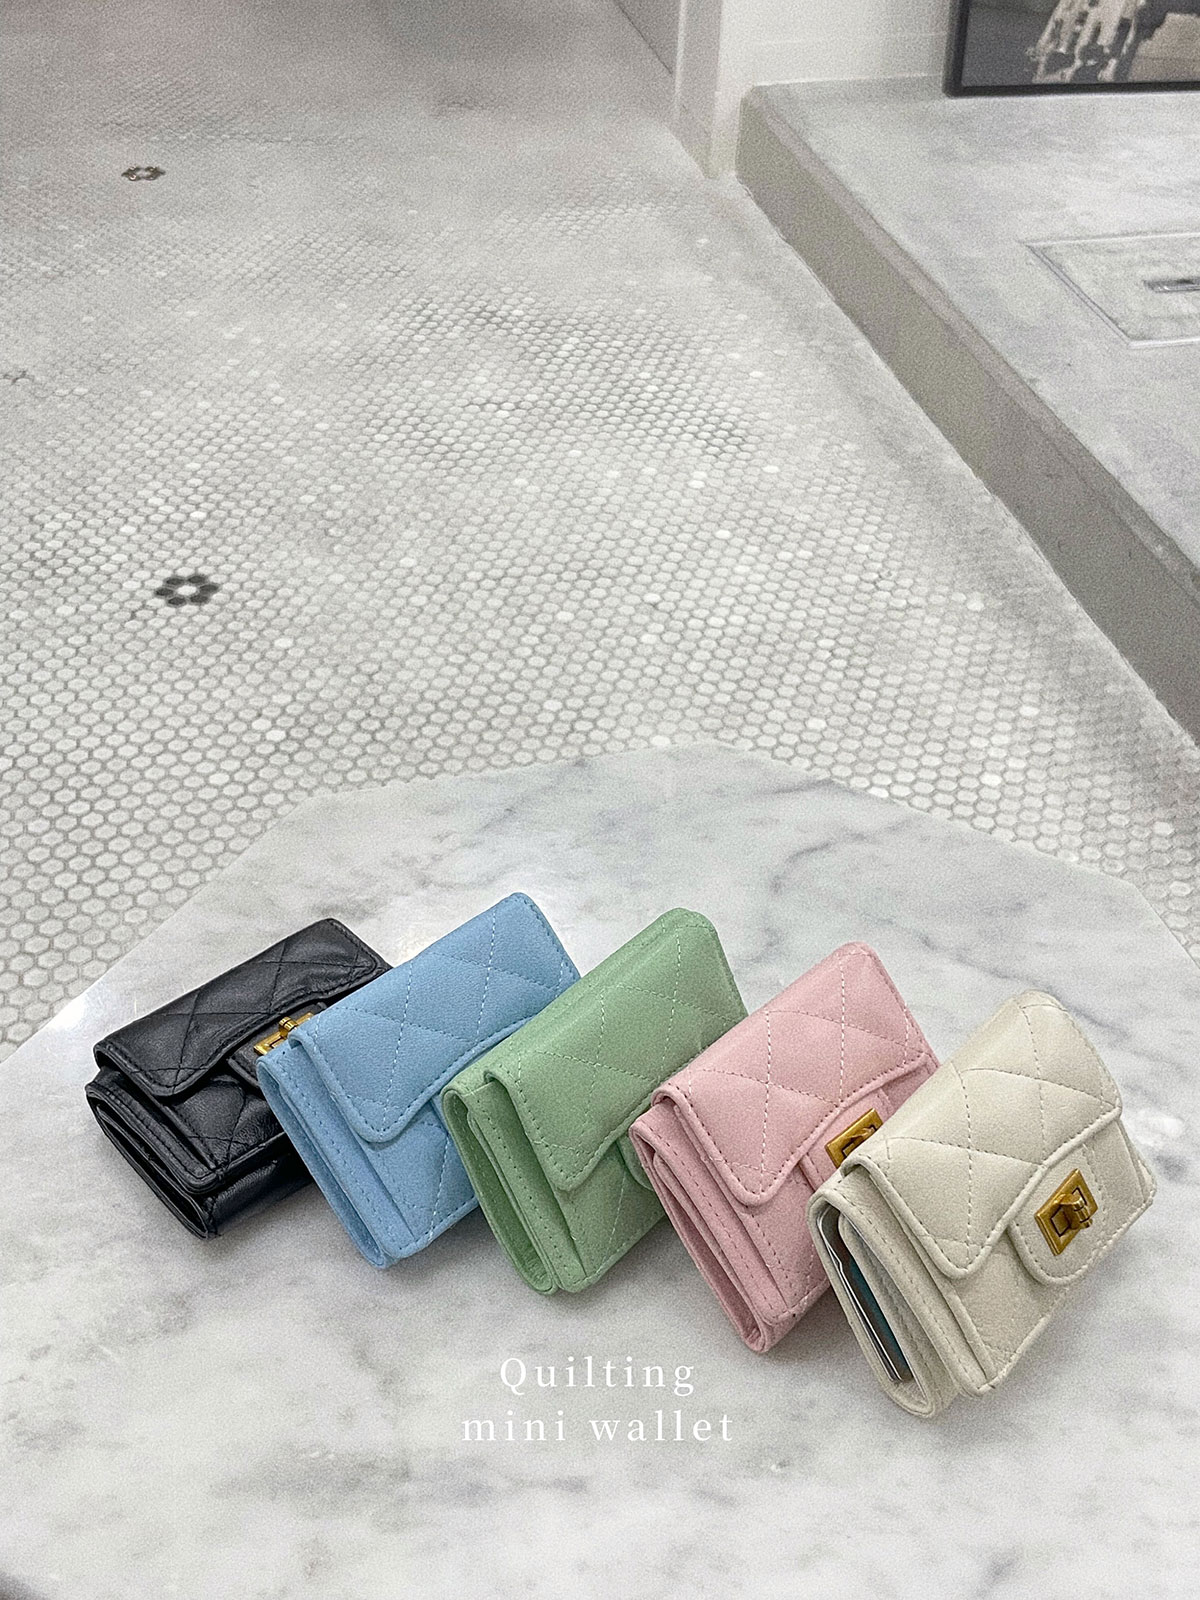 クン quilting mini Wallet カラー:ブラック、アイボリー、ハヌル、バレーピンク、ミントグリーン